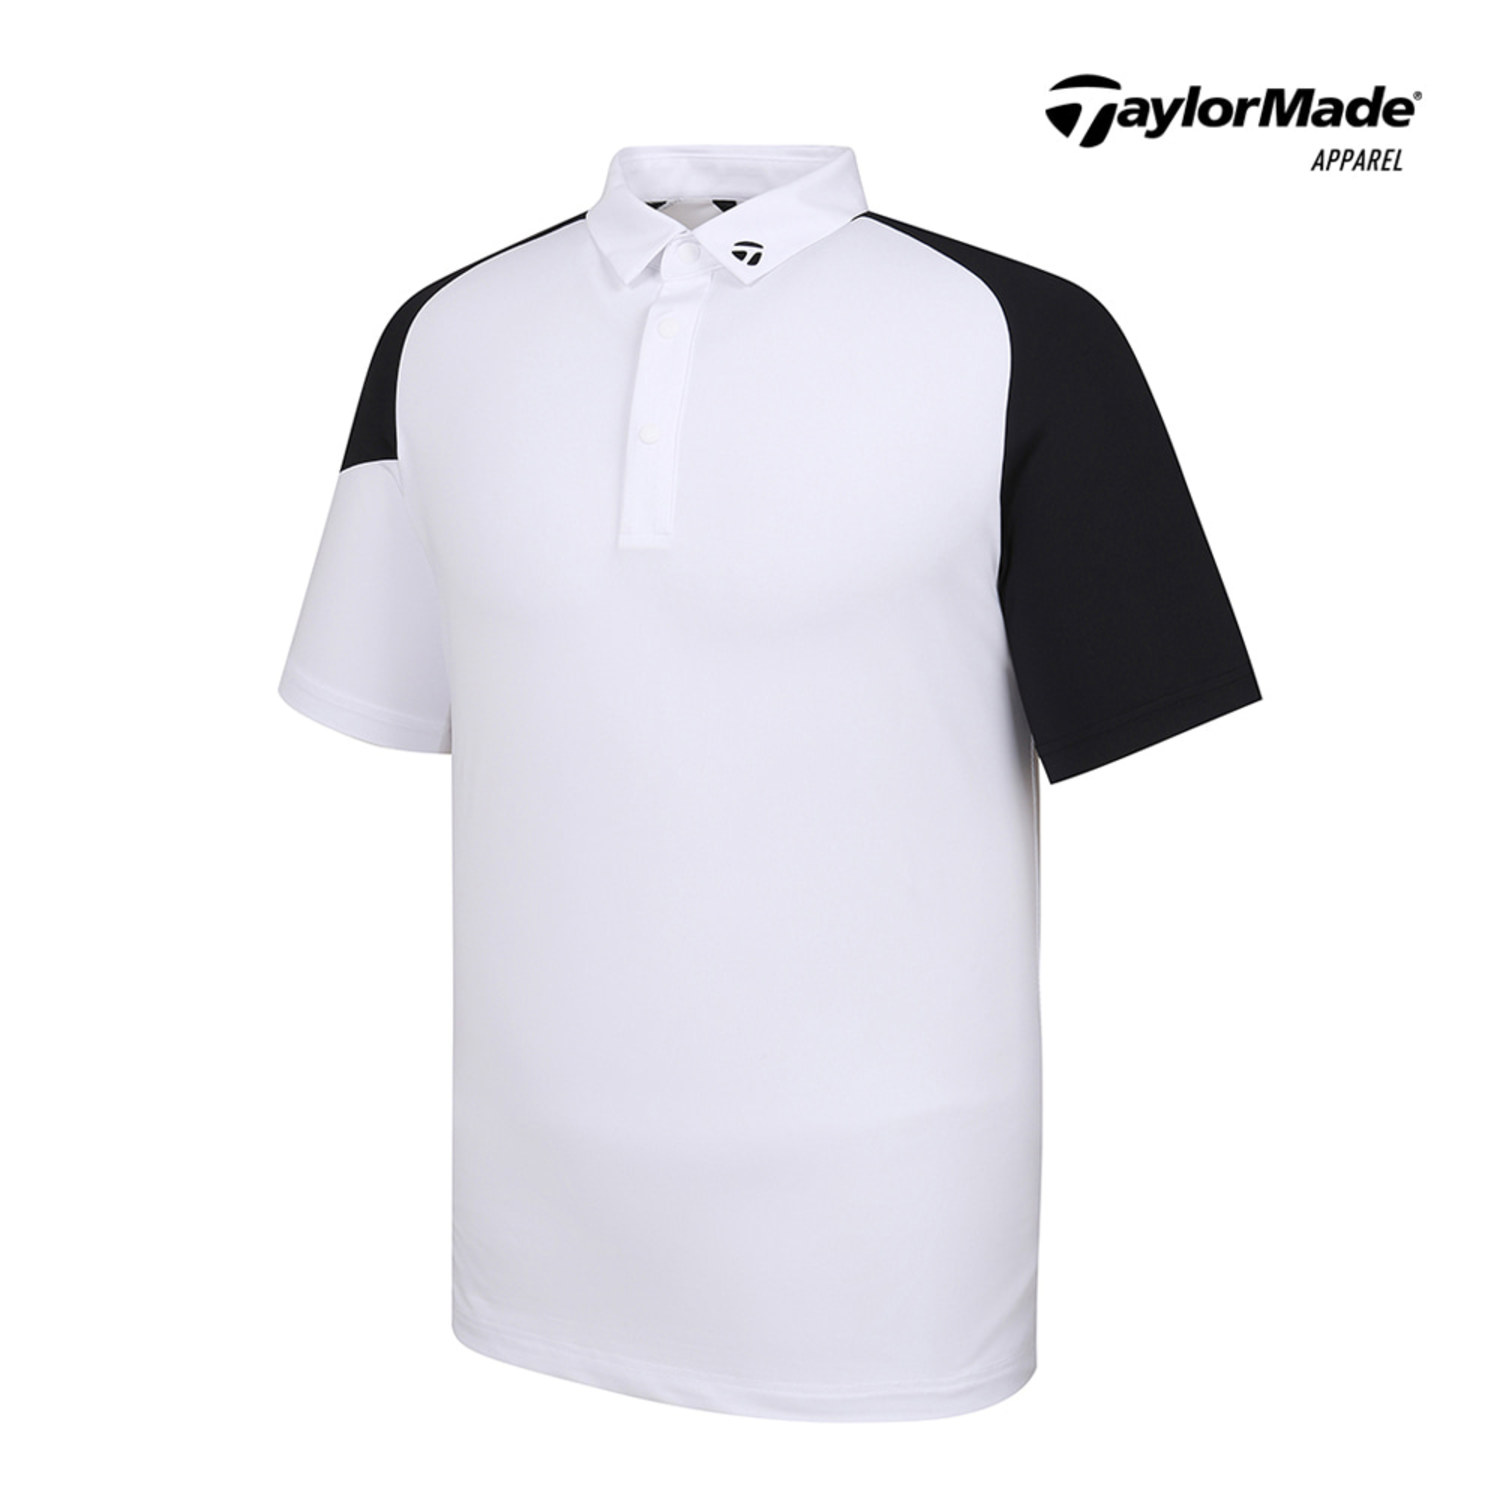 [테일러메이드]21SS 남성 래글런카라 반팔 티셔츠 TMTYK2243-100